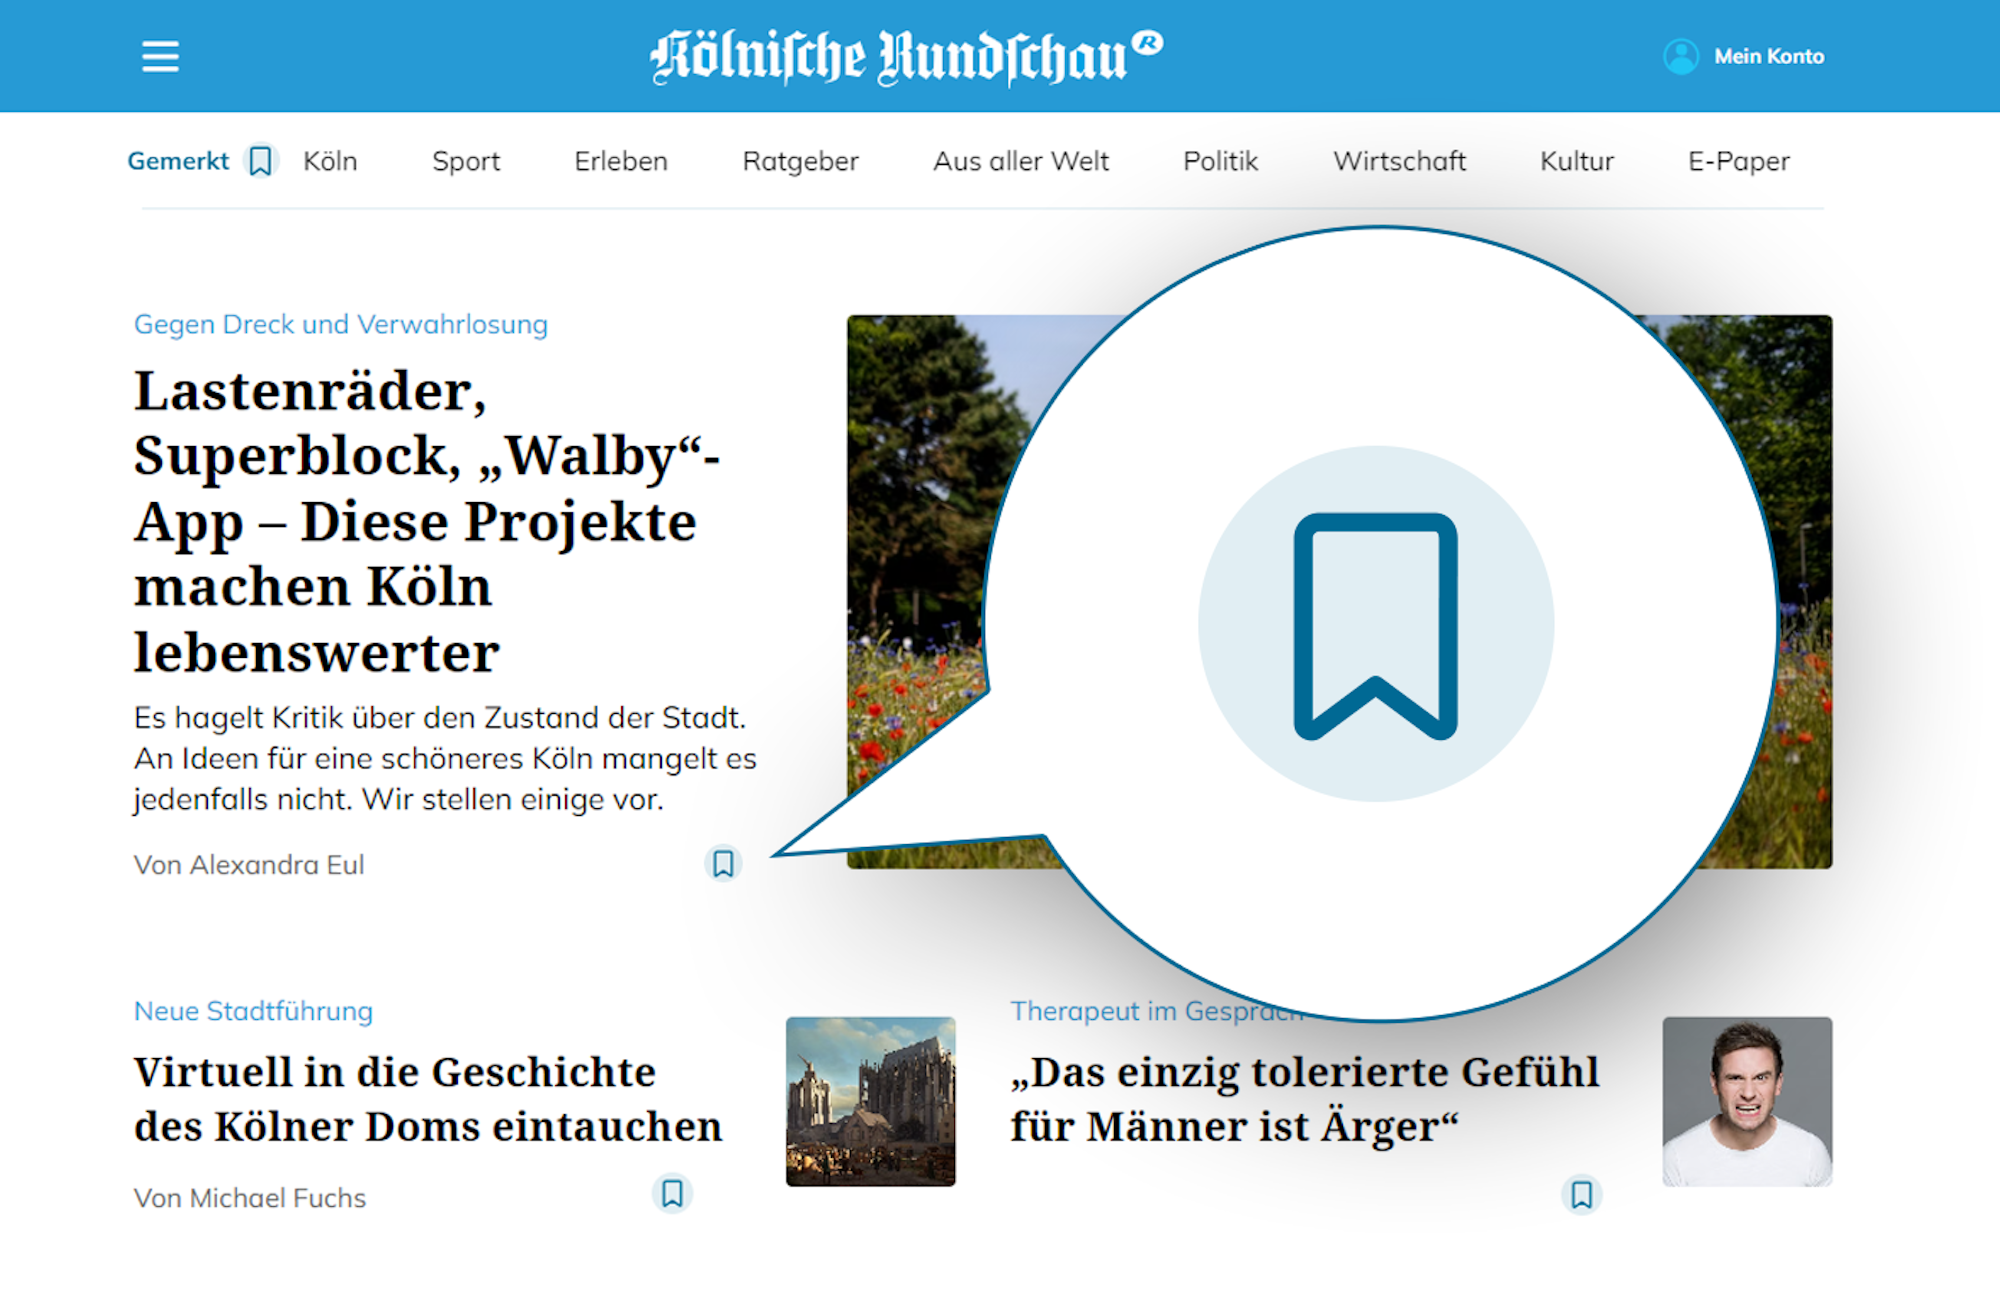 Jetzt neu auf rundschau-online.de: Artikel merken und später lesen - in Ihrer persönlichen Merkliste.